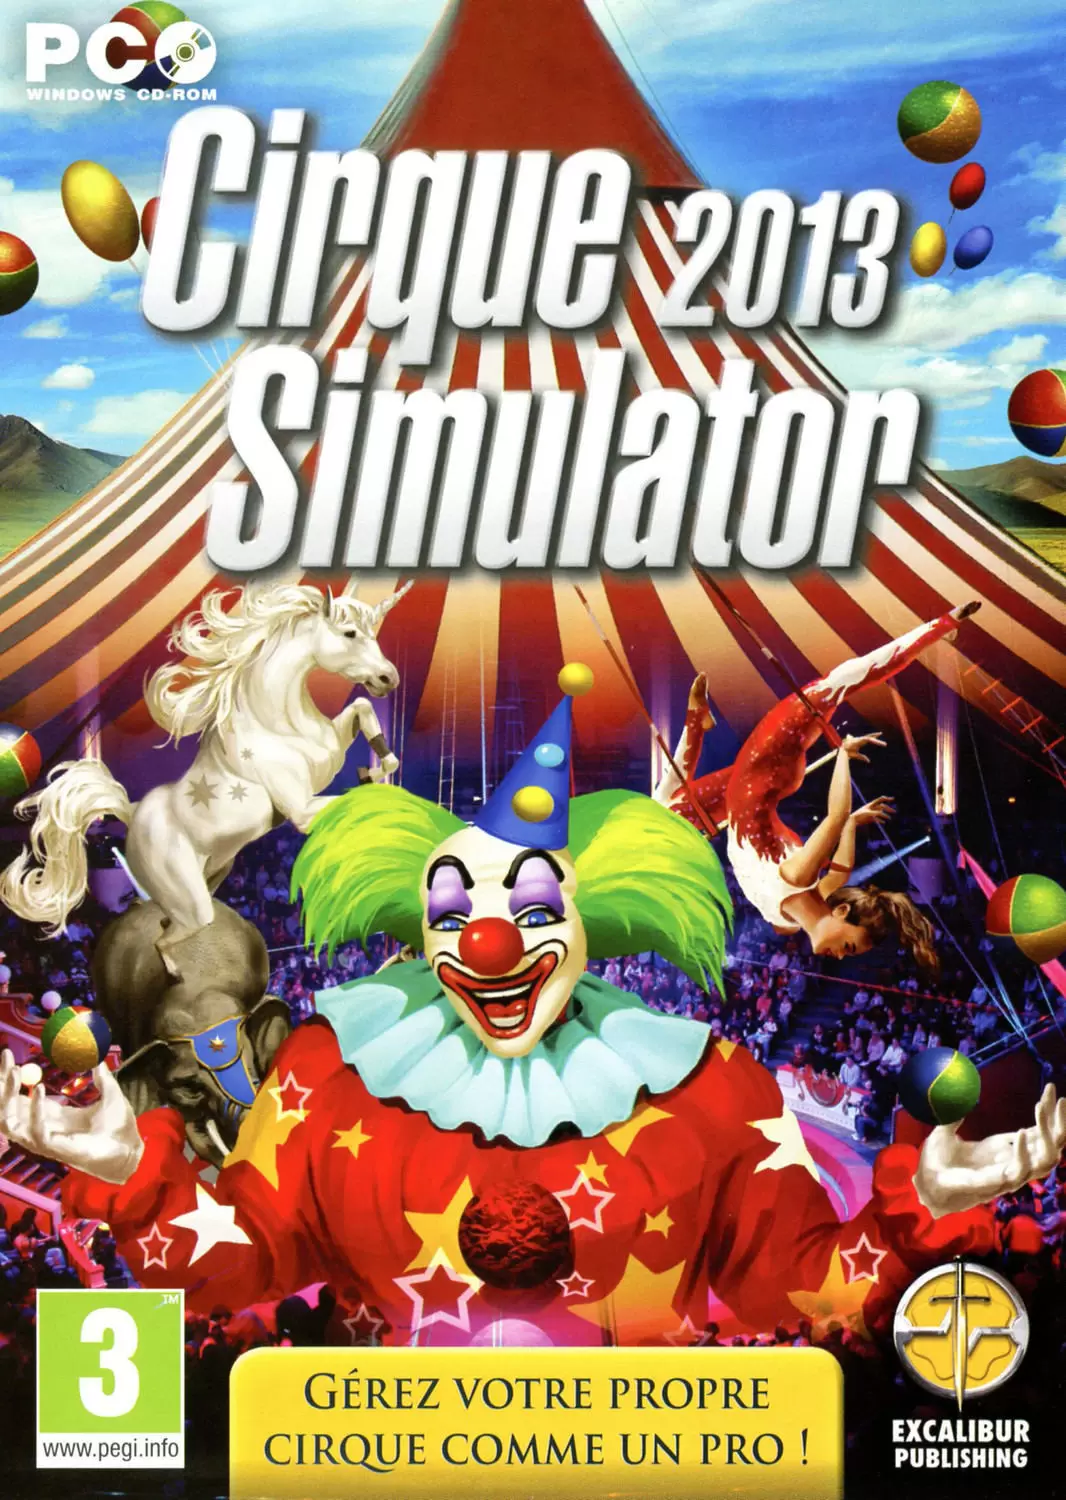 PC Games - Cirque Simulator 2013